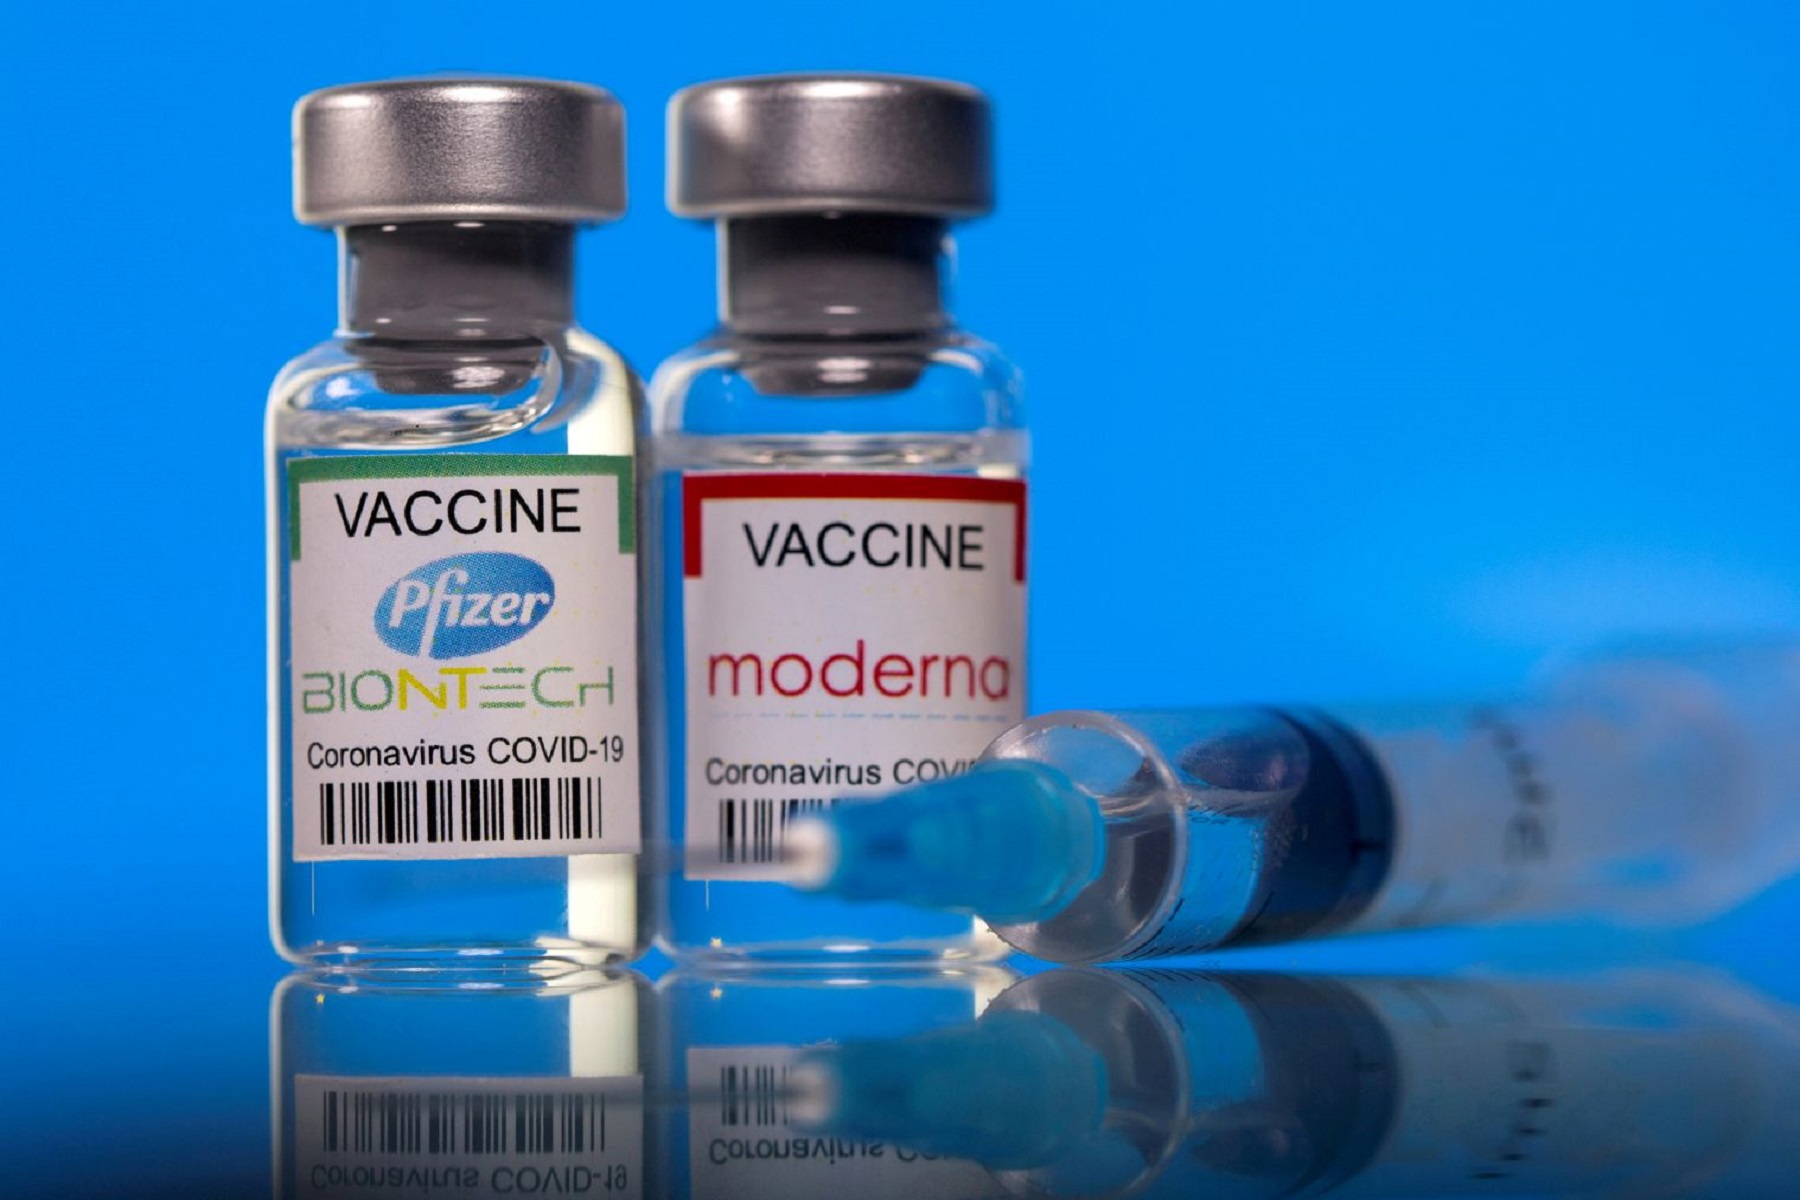 ΗΠΑ FDA: “Τα οφέλη του εμβολίου covid της Moderna υπερτερούν των κινδύνων” ενώ οι Σκανδιναβικές χώρες περιορίζουν τη χρήση.